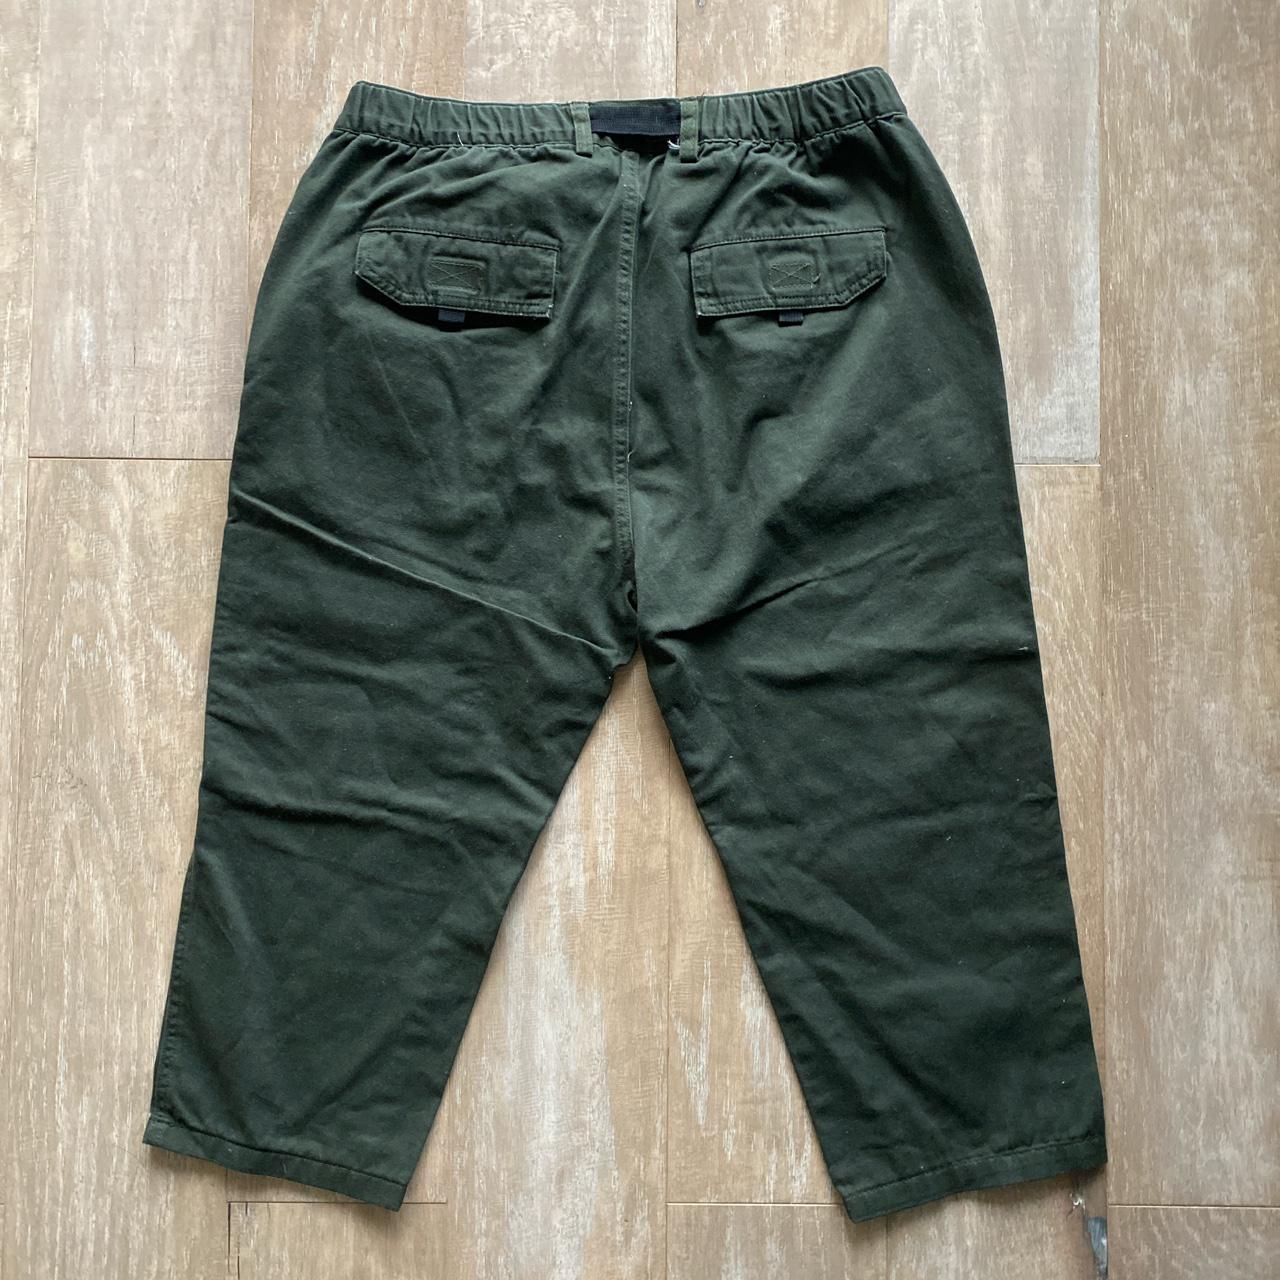 Men olive green belted utility cargo pants. Fits... - Depop